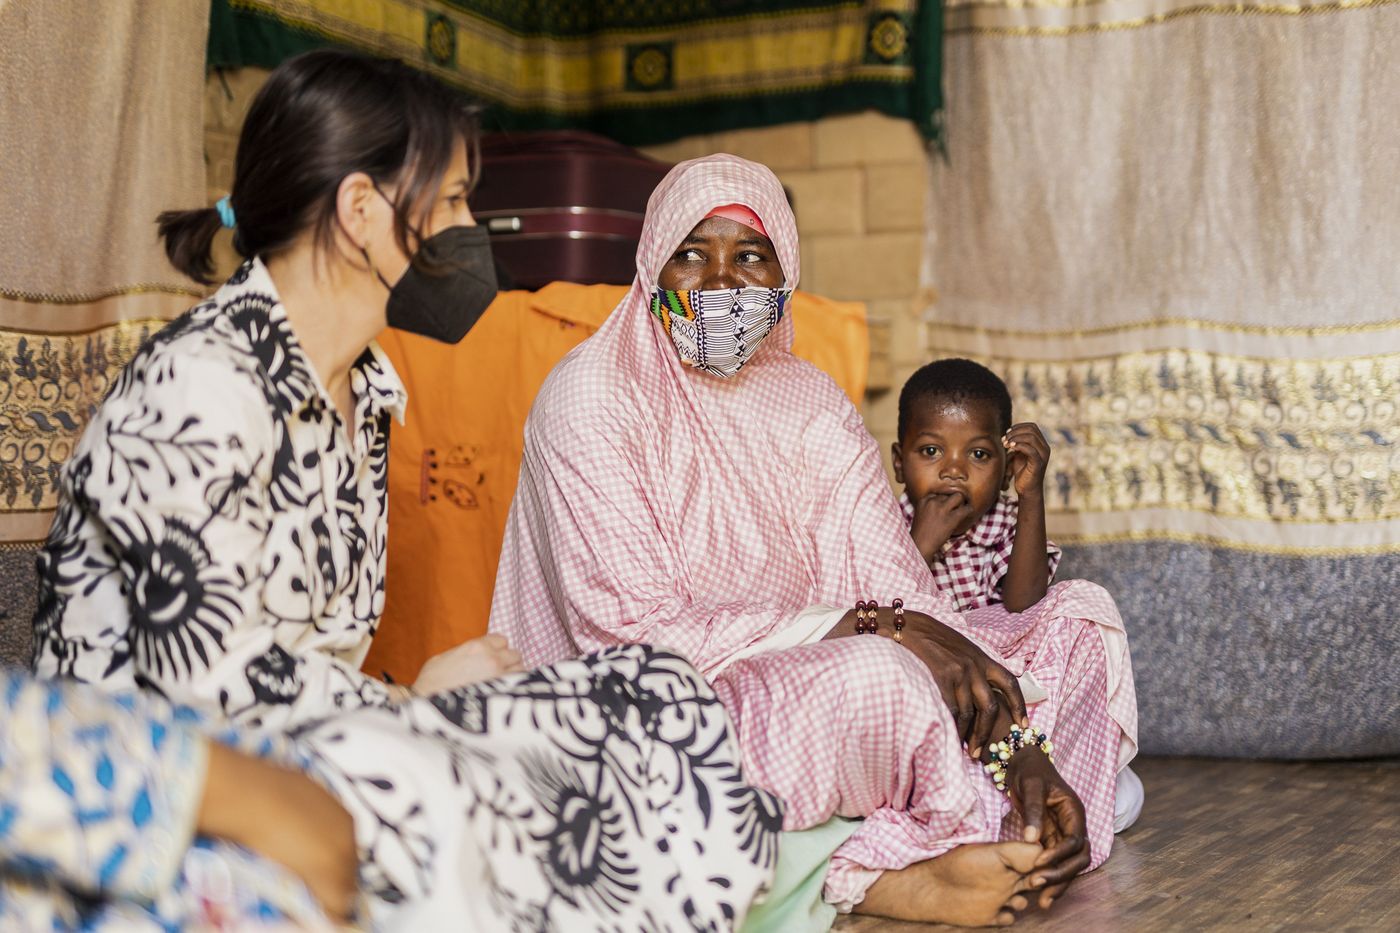 AußeForeign Minister Annalena Baerbock spoke with internally displaced persons during her Niger visit. nministerin Annalena Baerbock im Gespräch mit Binnenvertriebenen in Niger.